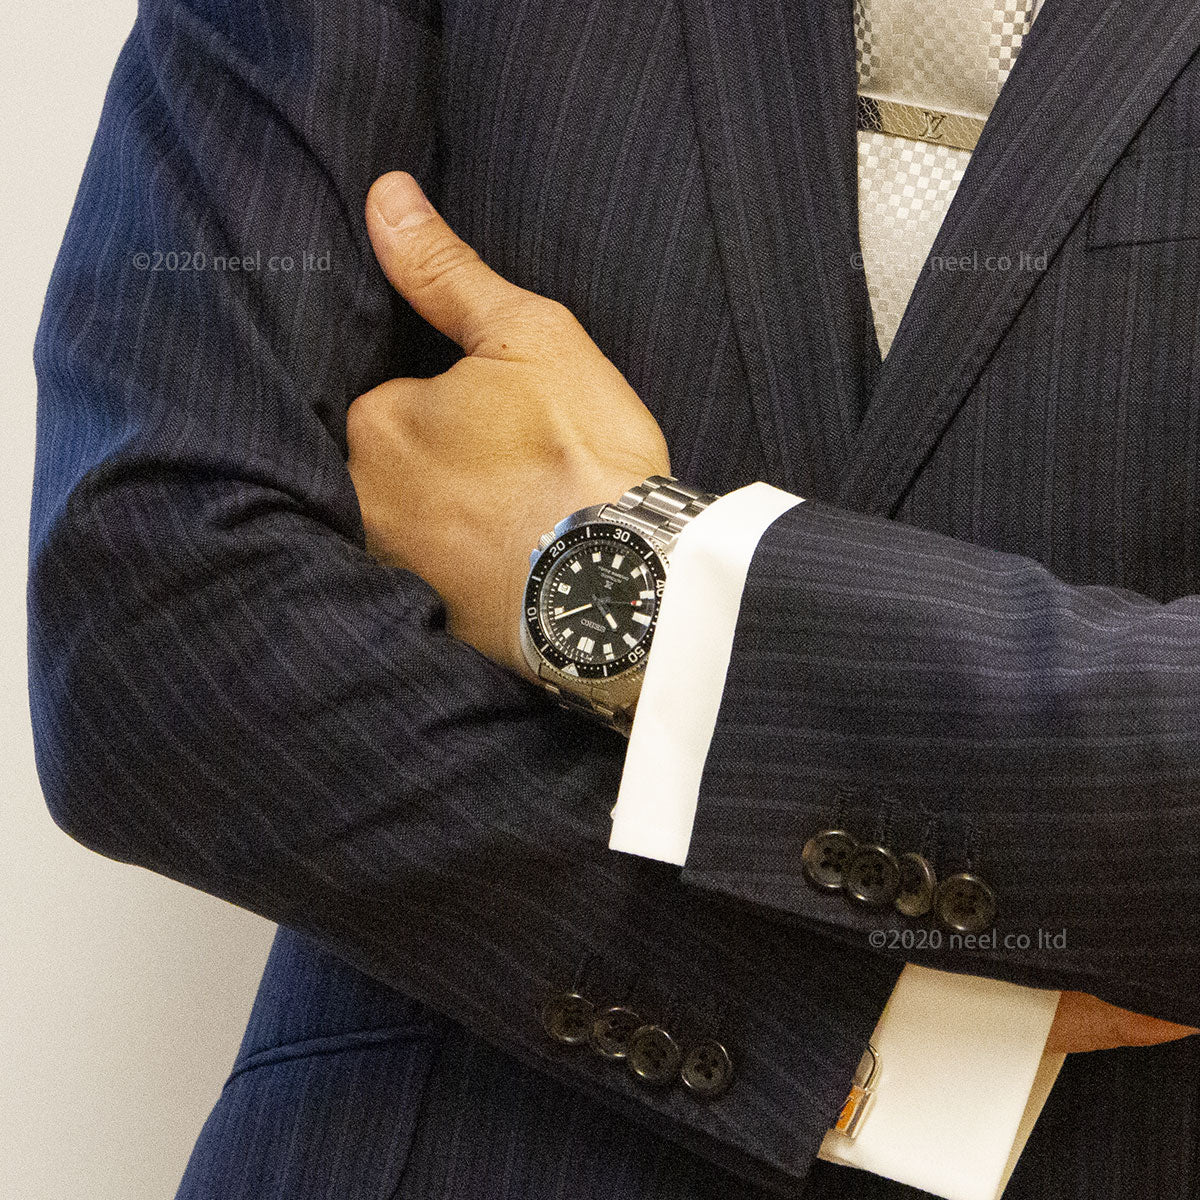 セイコー プロスペックス SEIKO PROSPEX 2ndダイバーズ 現代デザイン メカニカル 自動巻き コアショップ専用モデル 腕時計 メンズ SBDC109